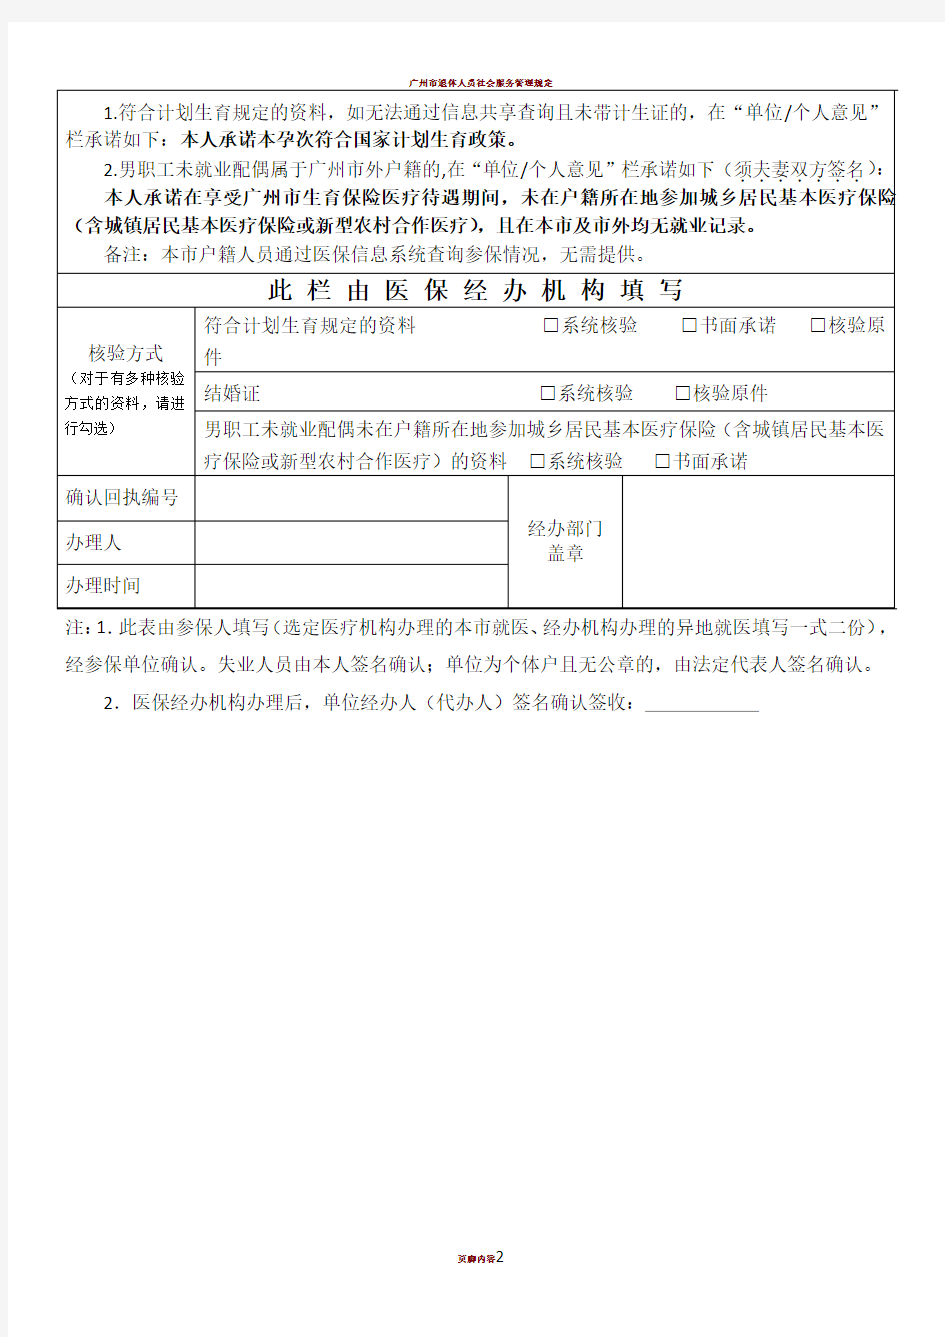 广州市职工生育保险就医确认申请表(2019年最新版)